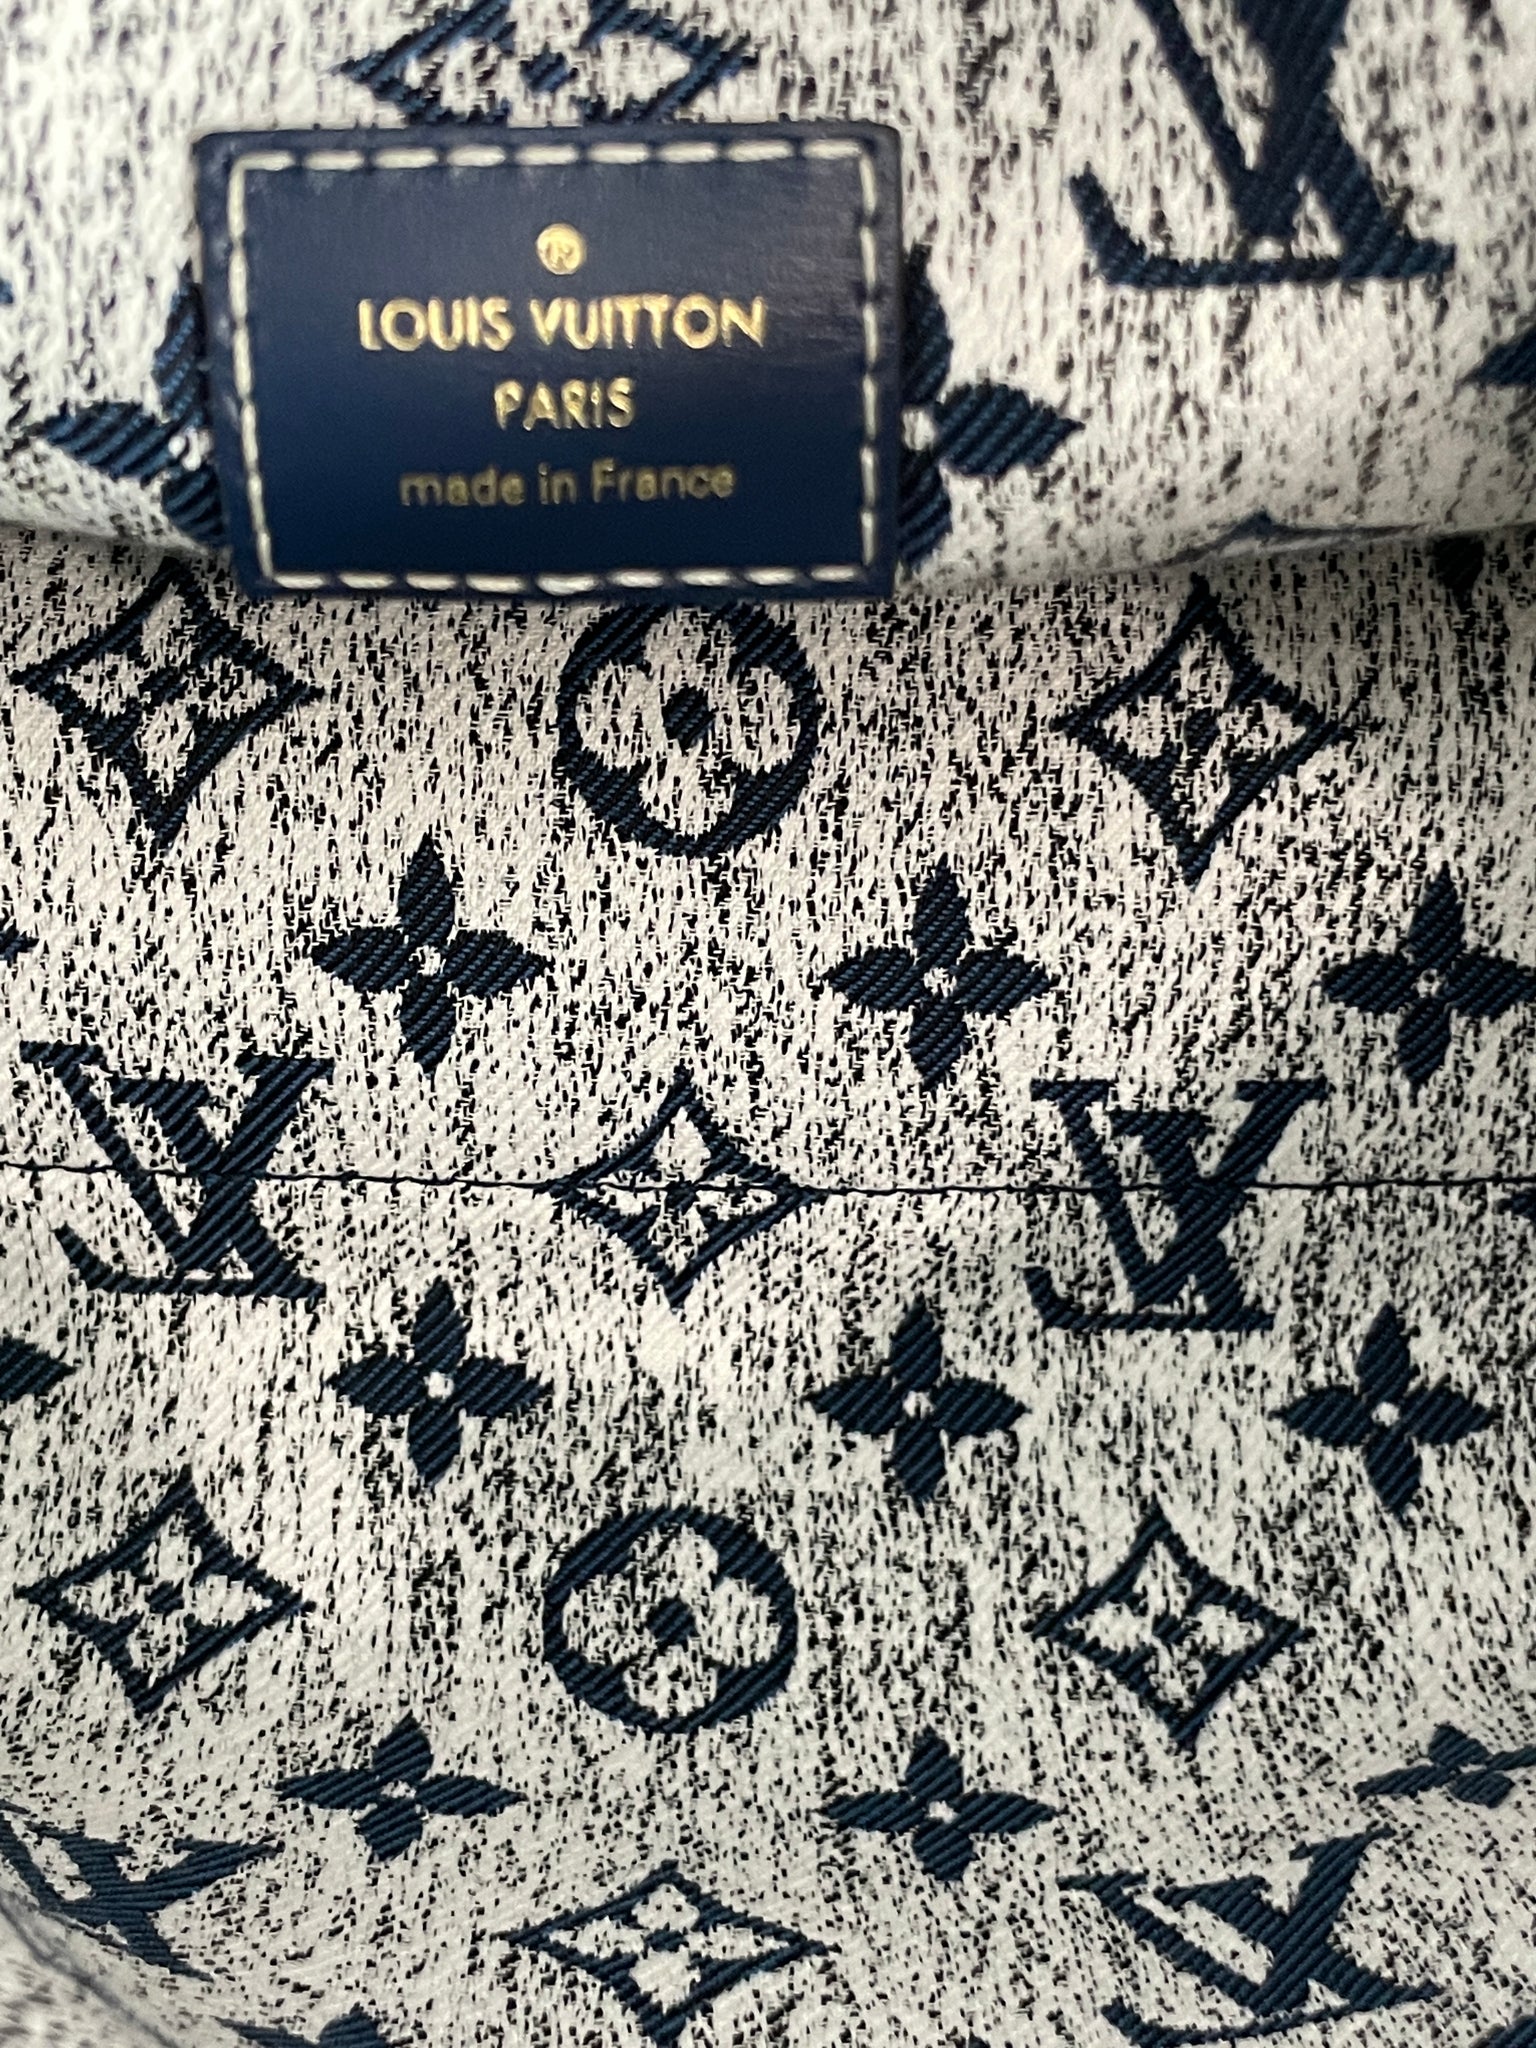  Louis Vuitton (LOUIS VUITTON) Handbag Tote Bag Monogram  Jacquard Denim On The Go MM M59608 Navy Blue [Parallel Import], bule :  Clothing, Shoes & Jewelry